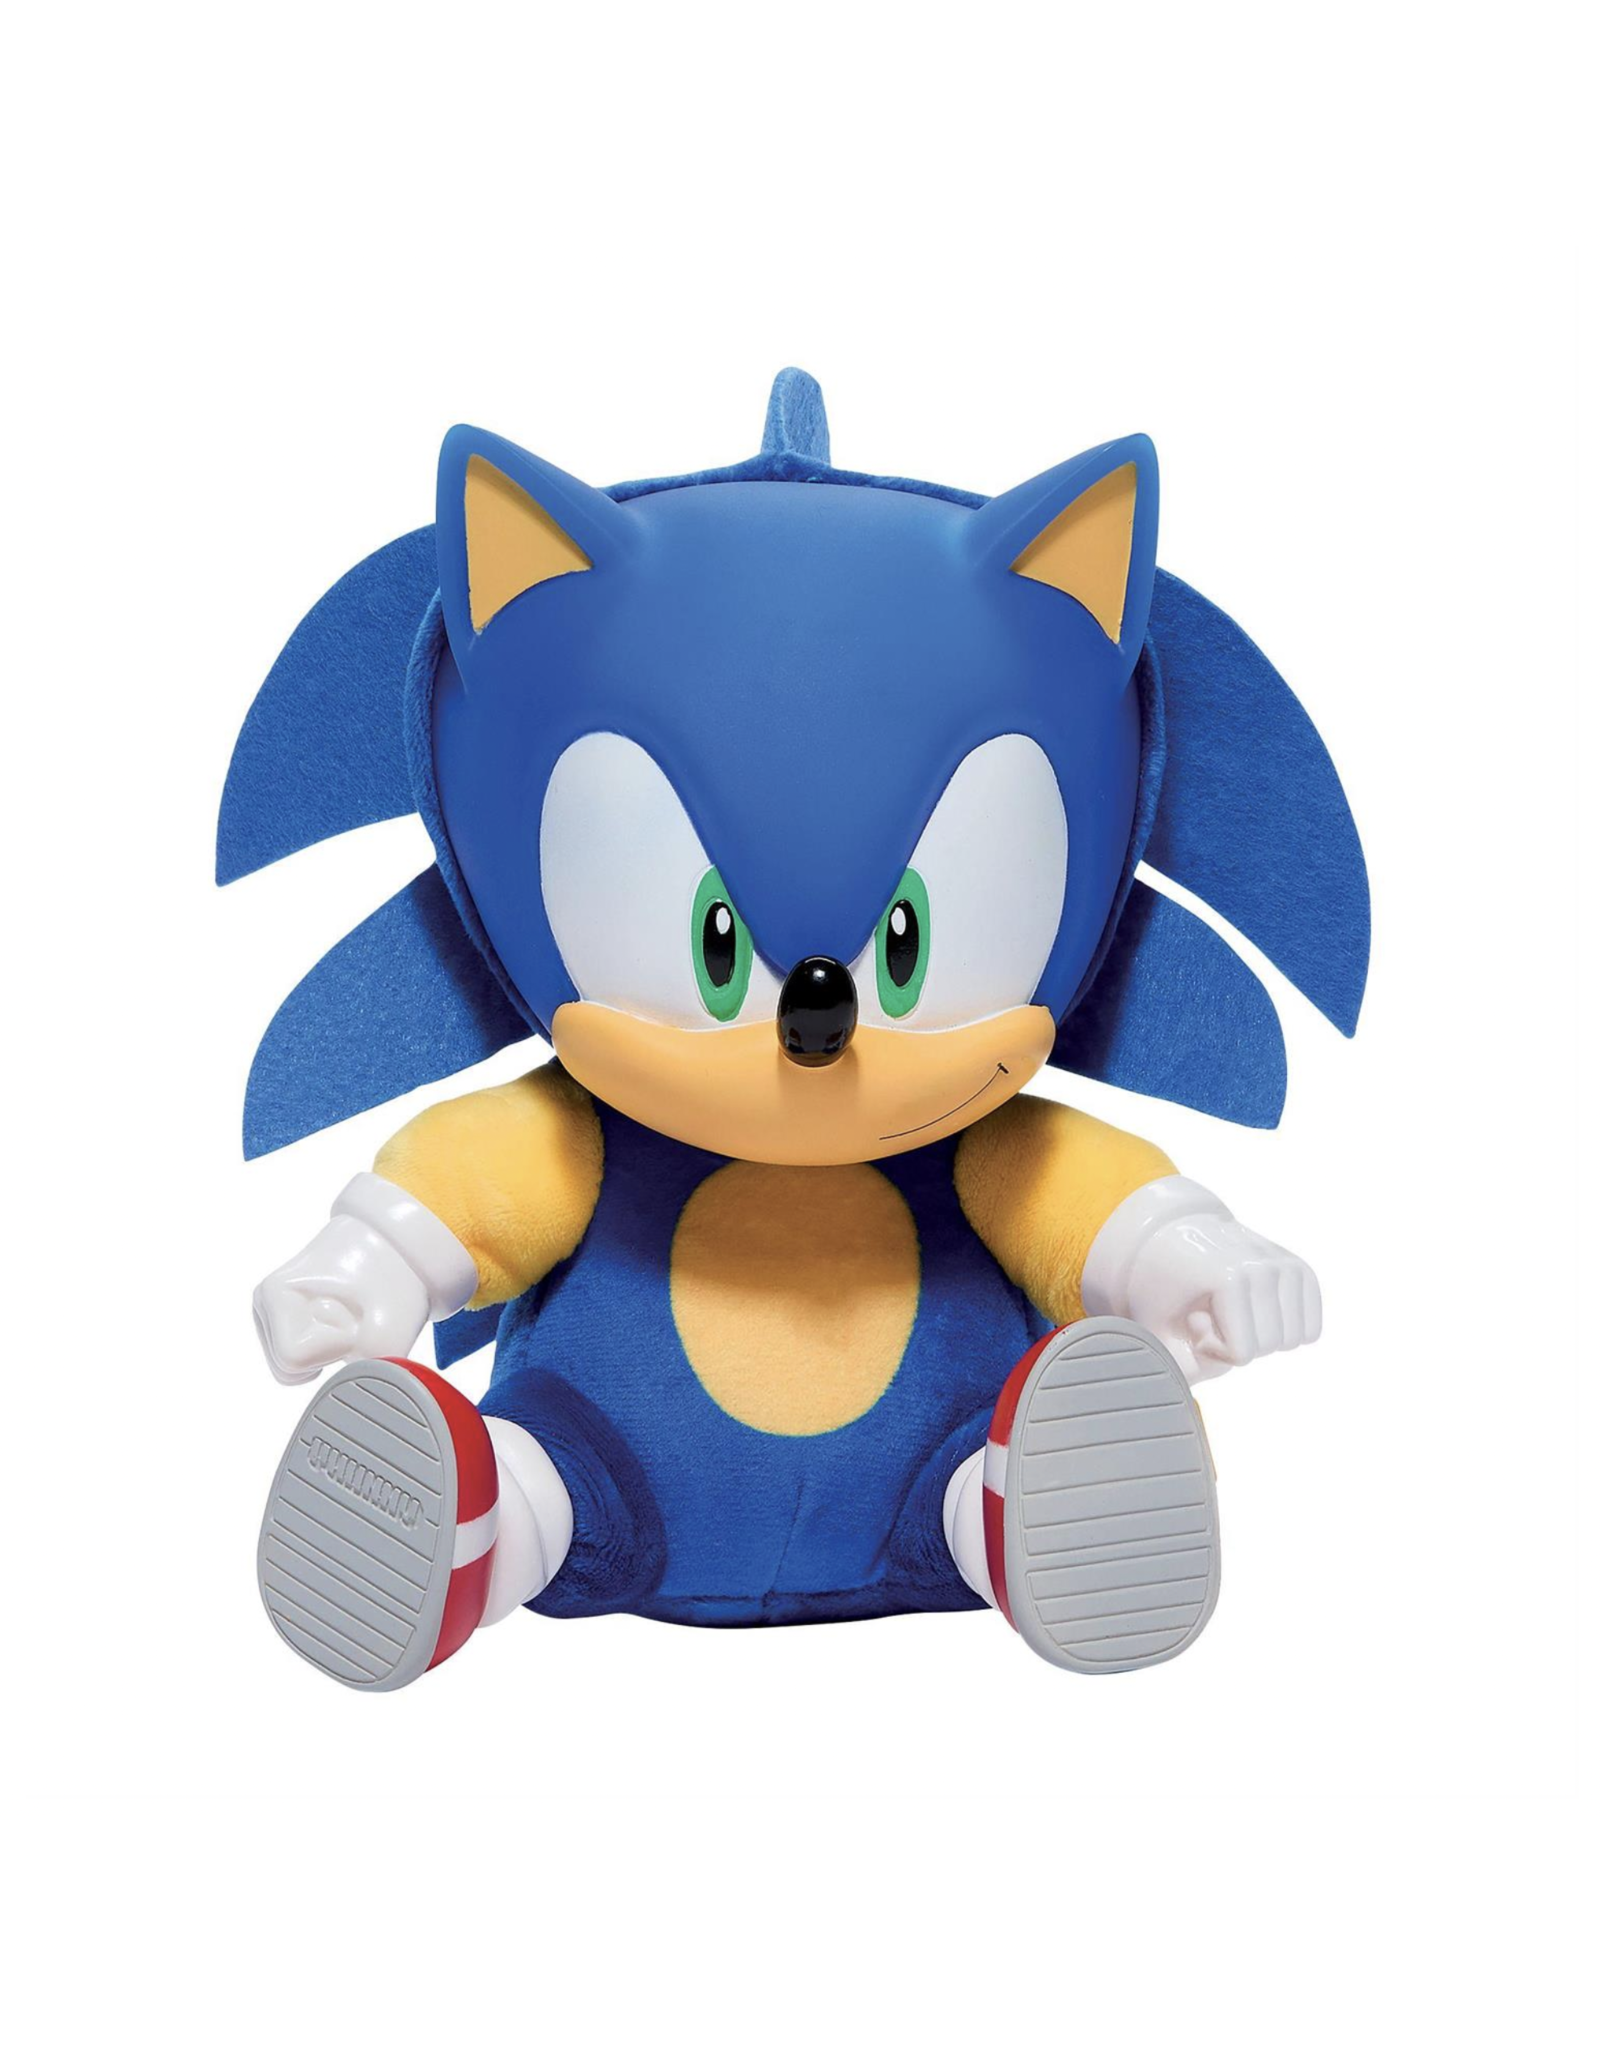 Sonic the Hedgehog 8" Plush